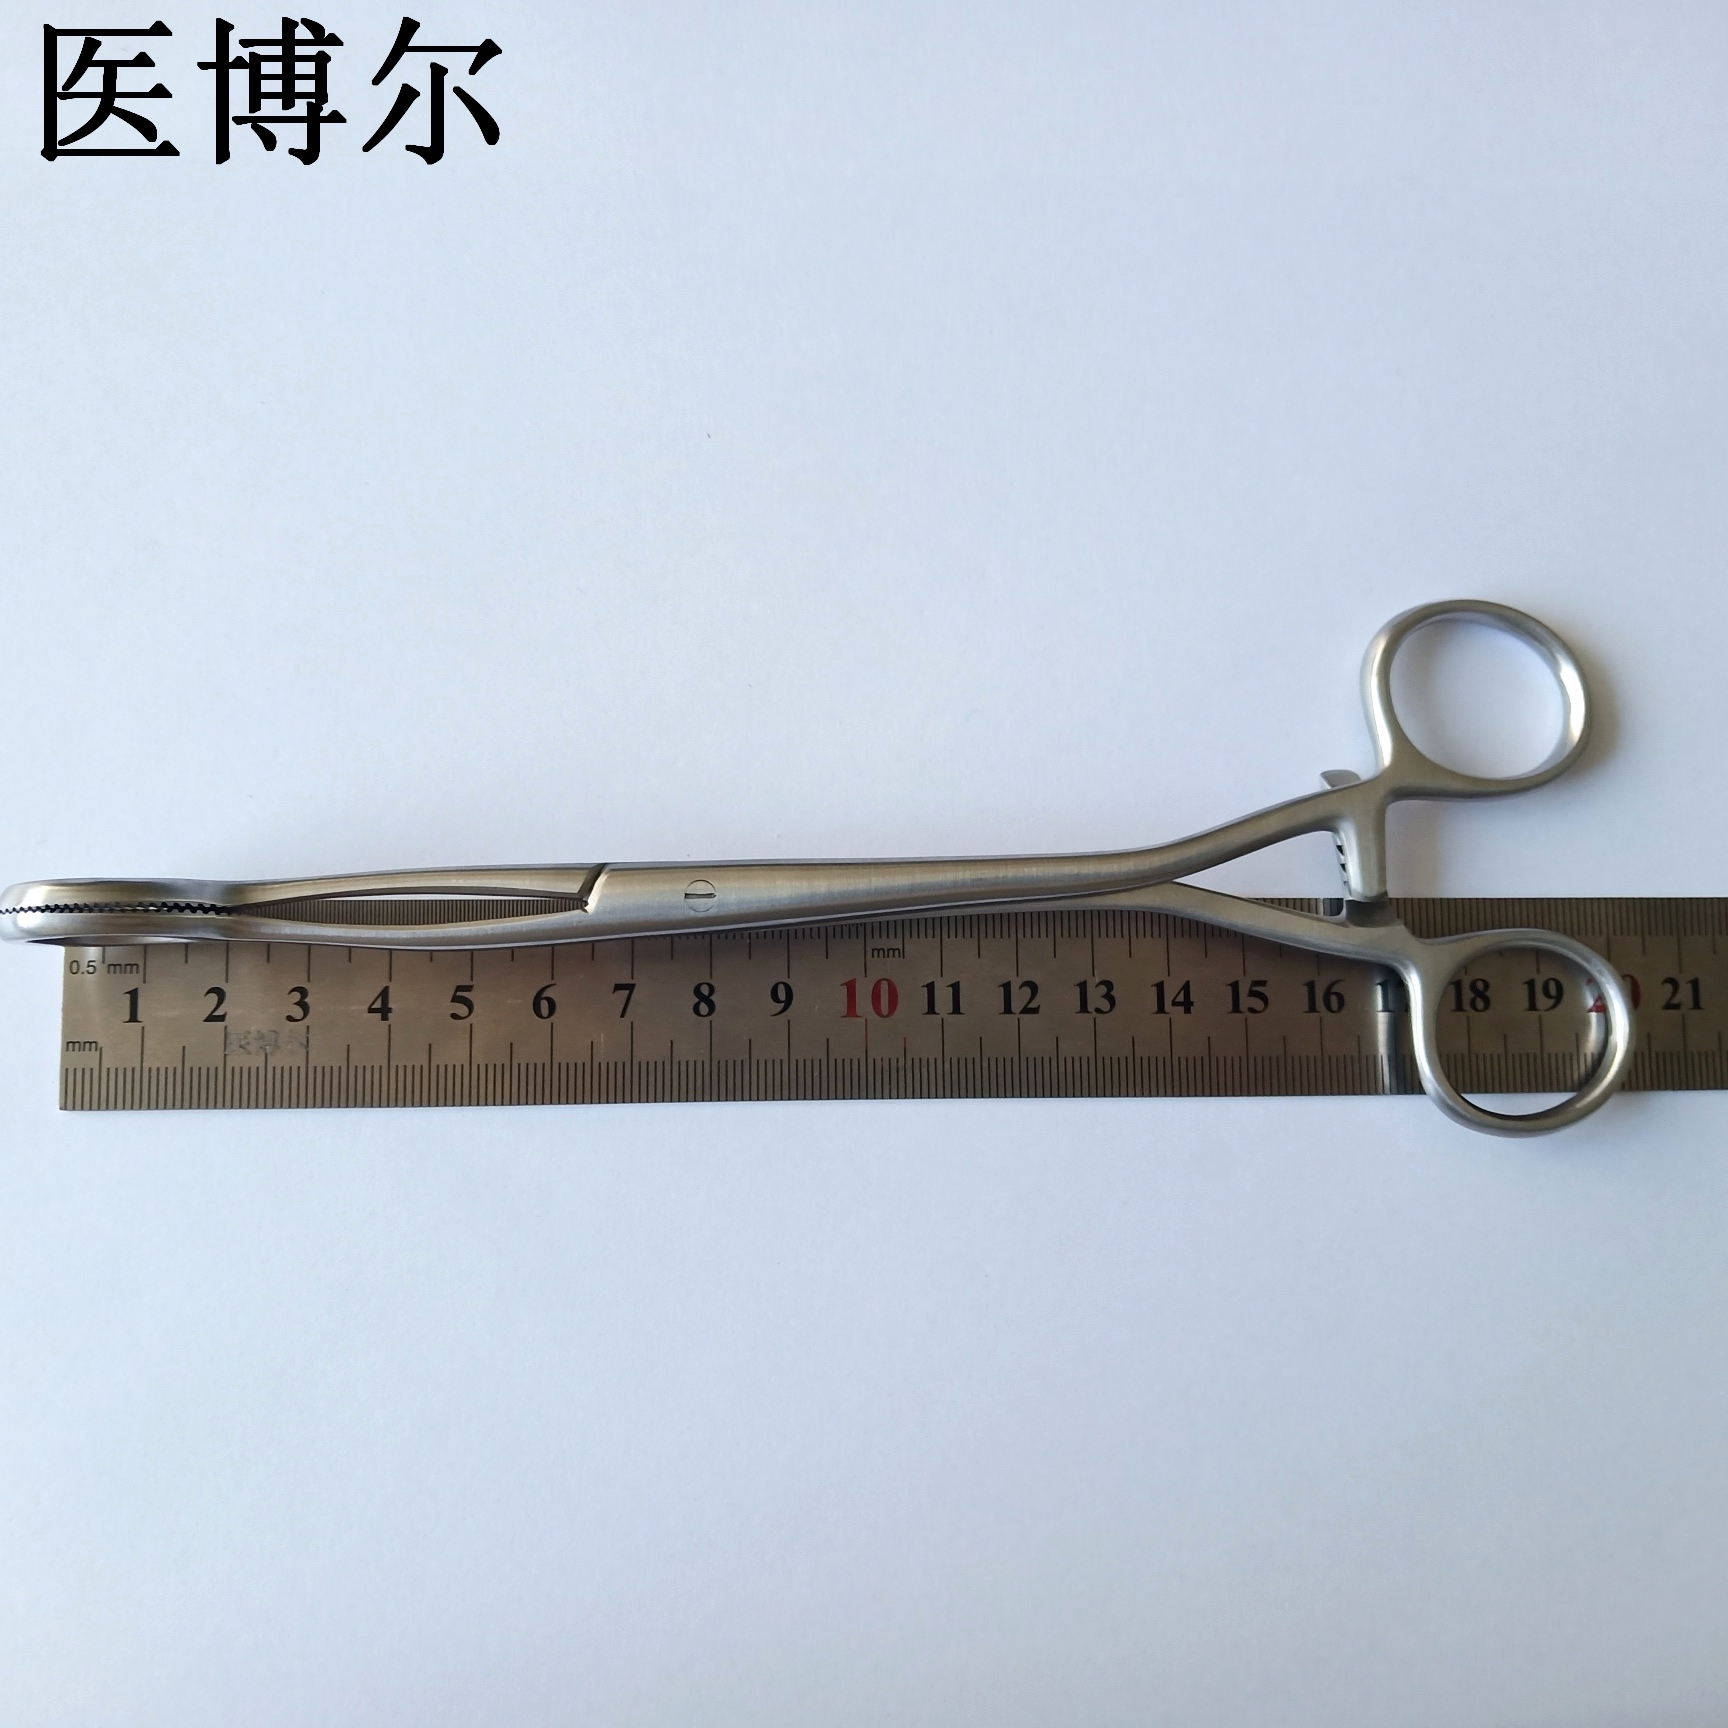 20cm舌钳 (1)_看图王.jpg